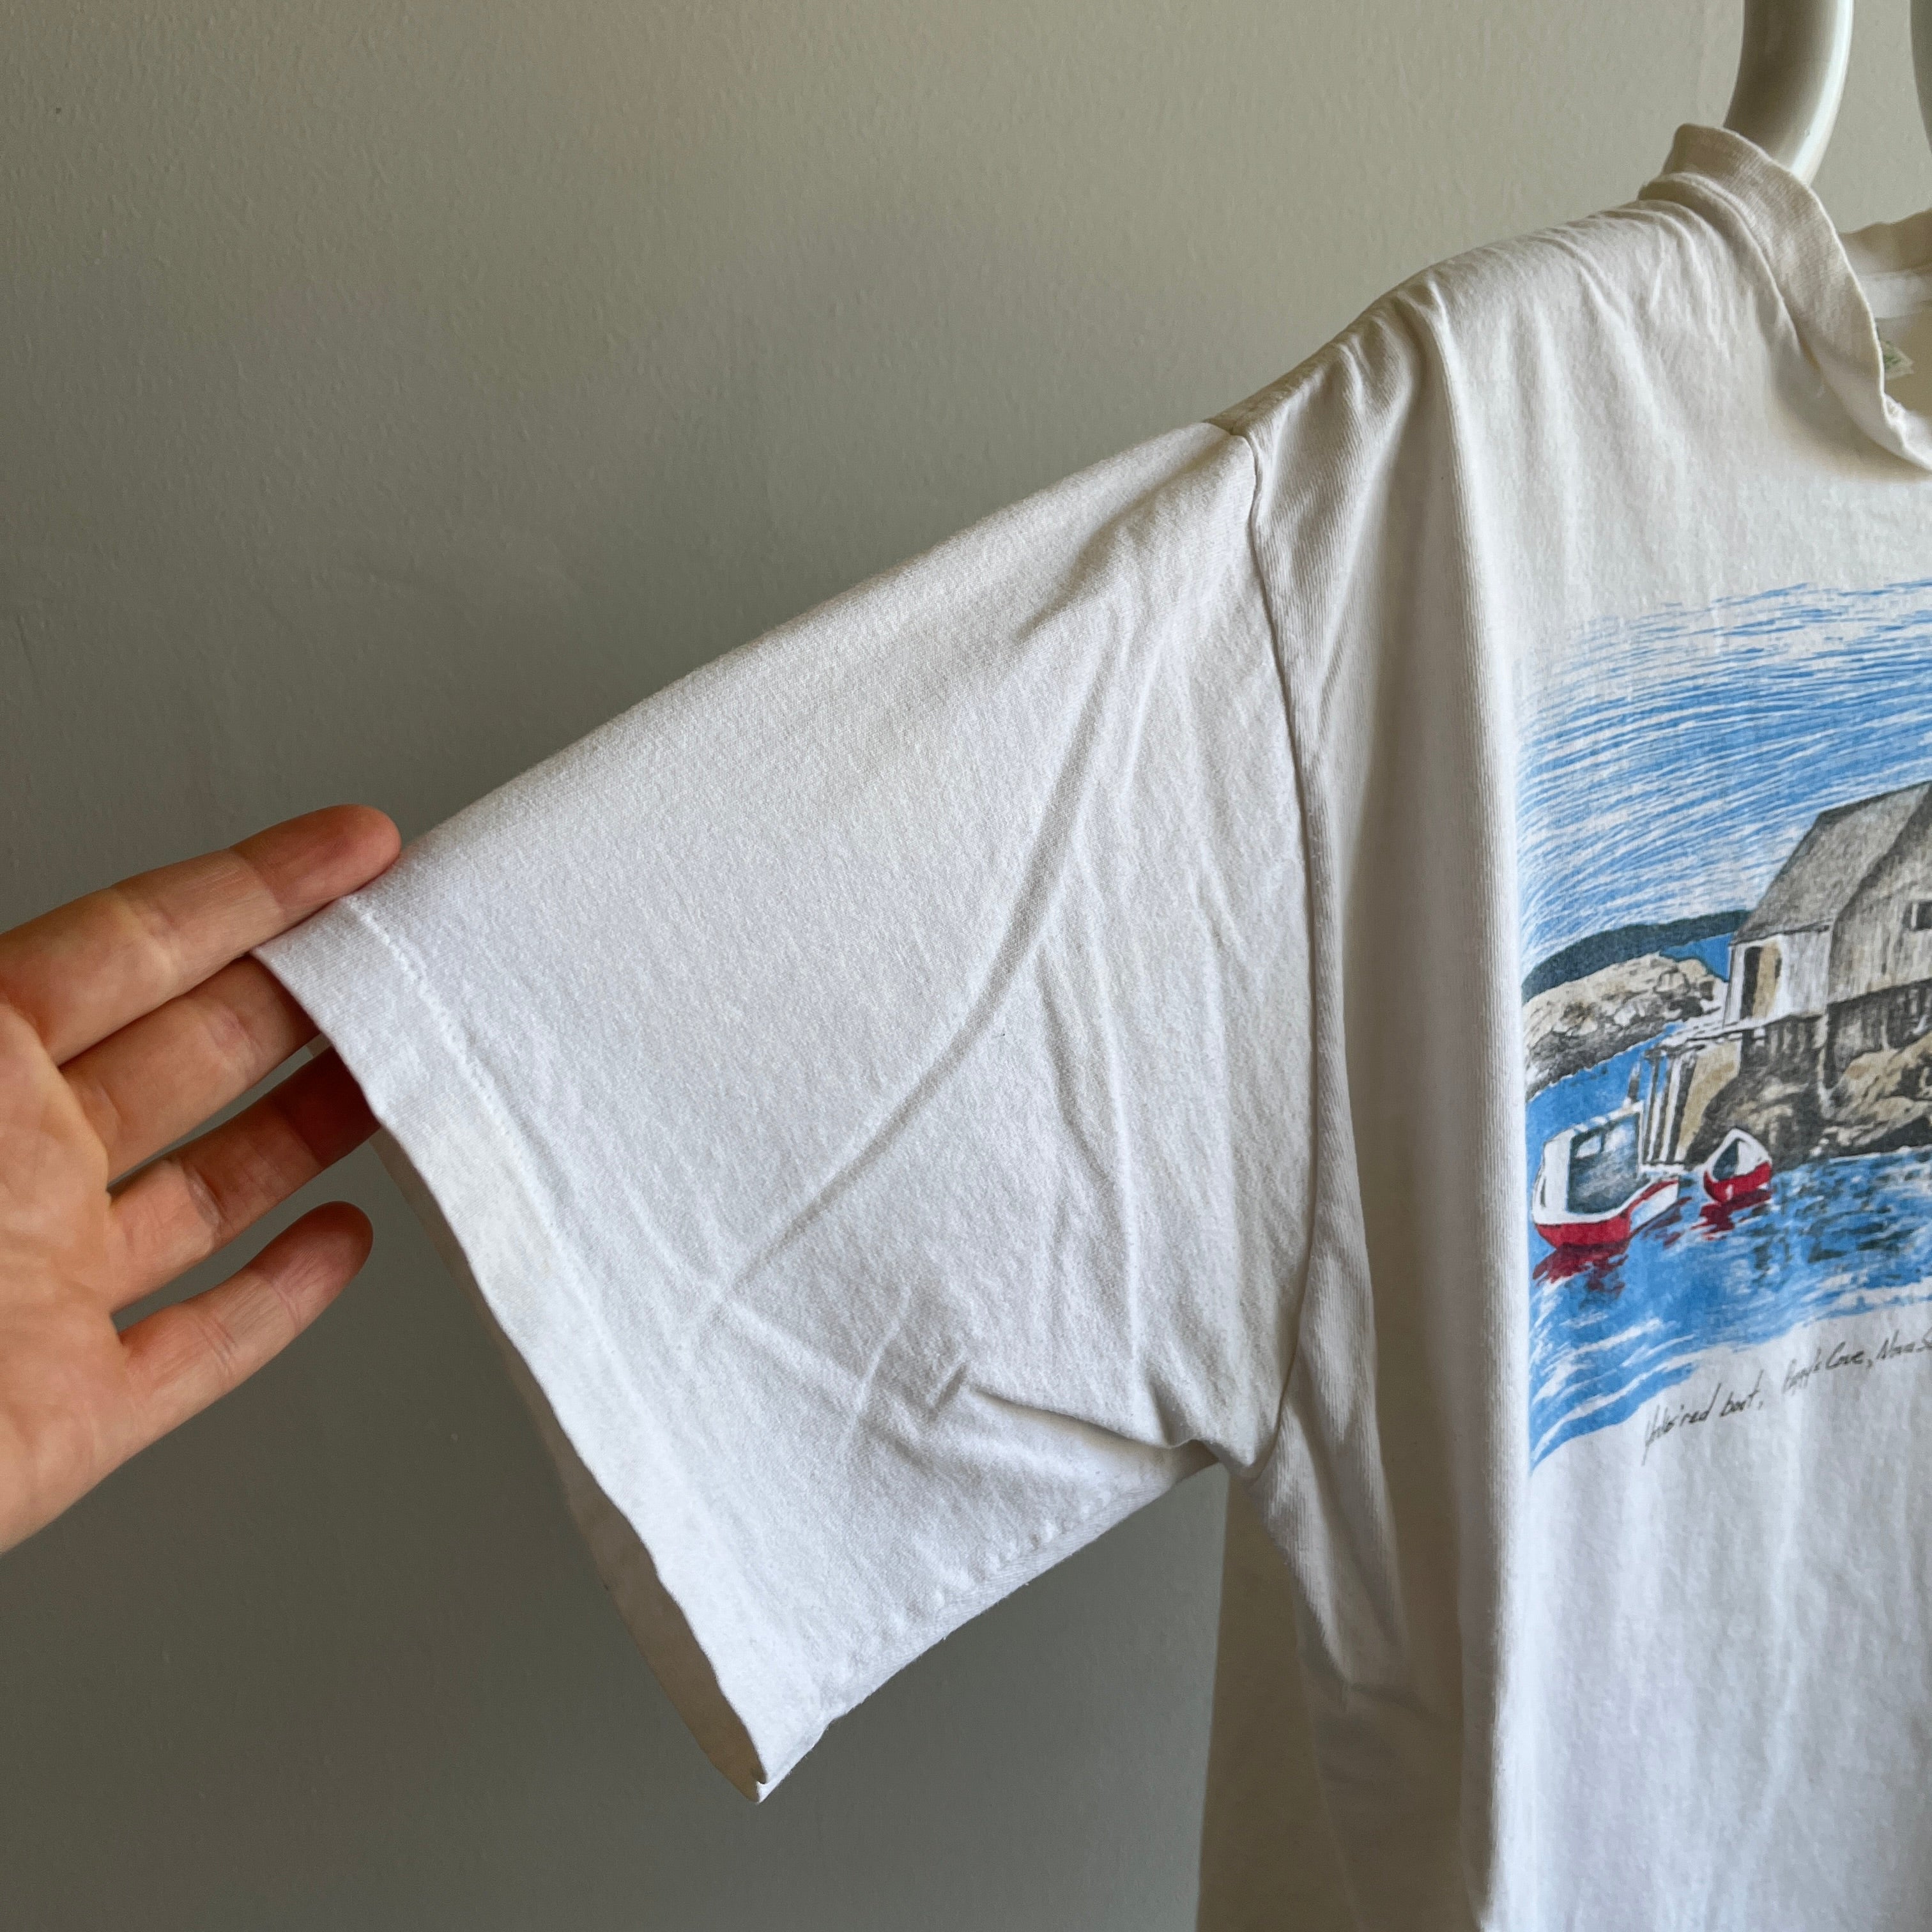 1993 Peggy's Cove, Nouvelle-Écosse T-shirt en coton